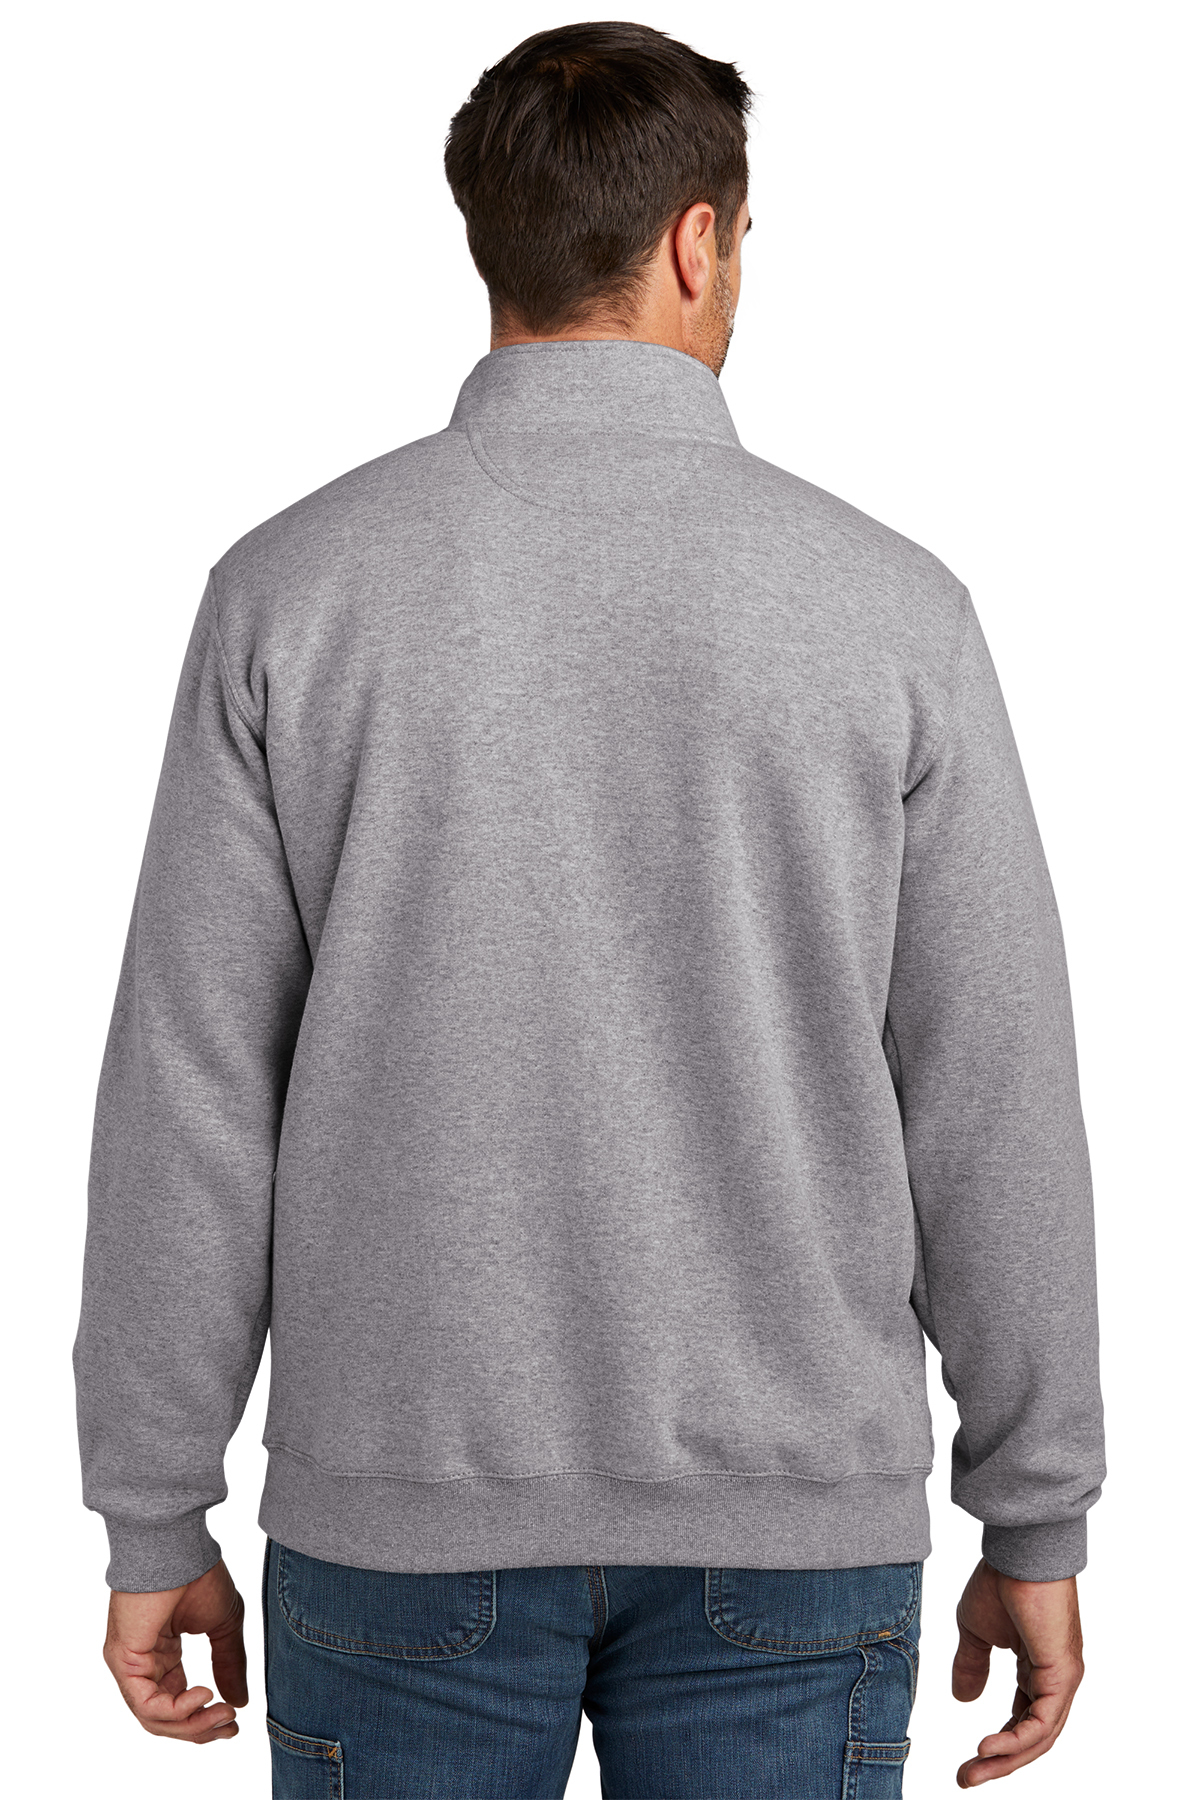 Carhartt Midweight 1/4-Zip Mock Neck Sweatshirt | Product | SanMar